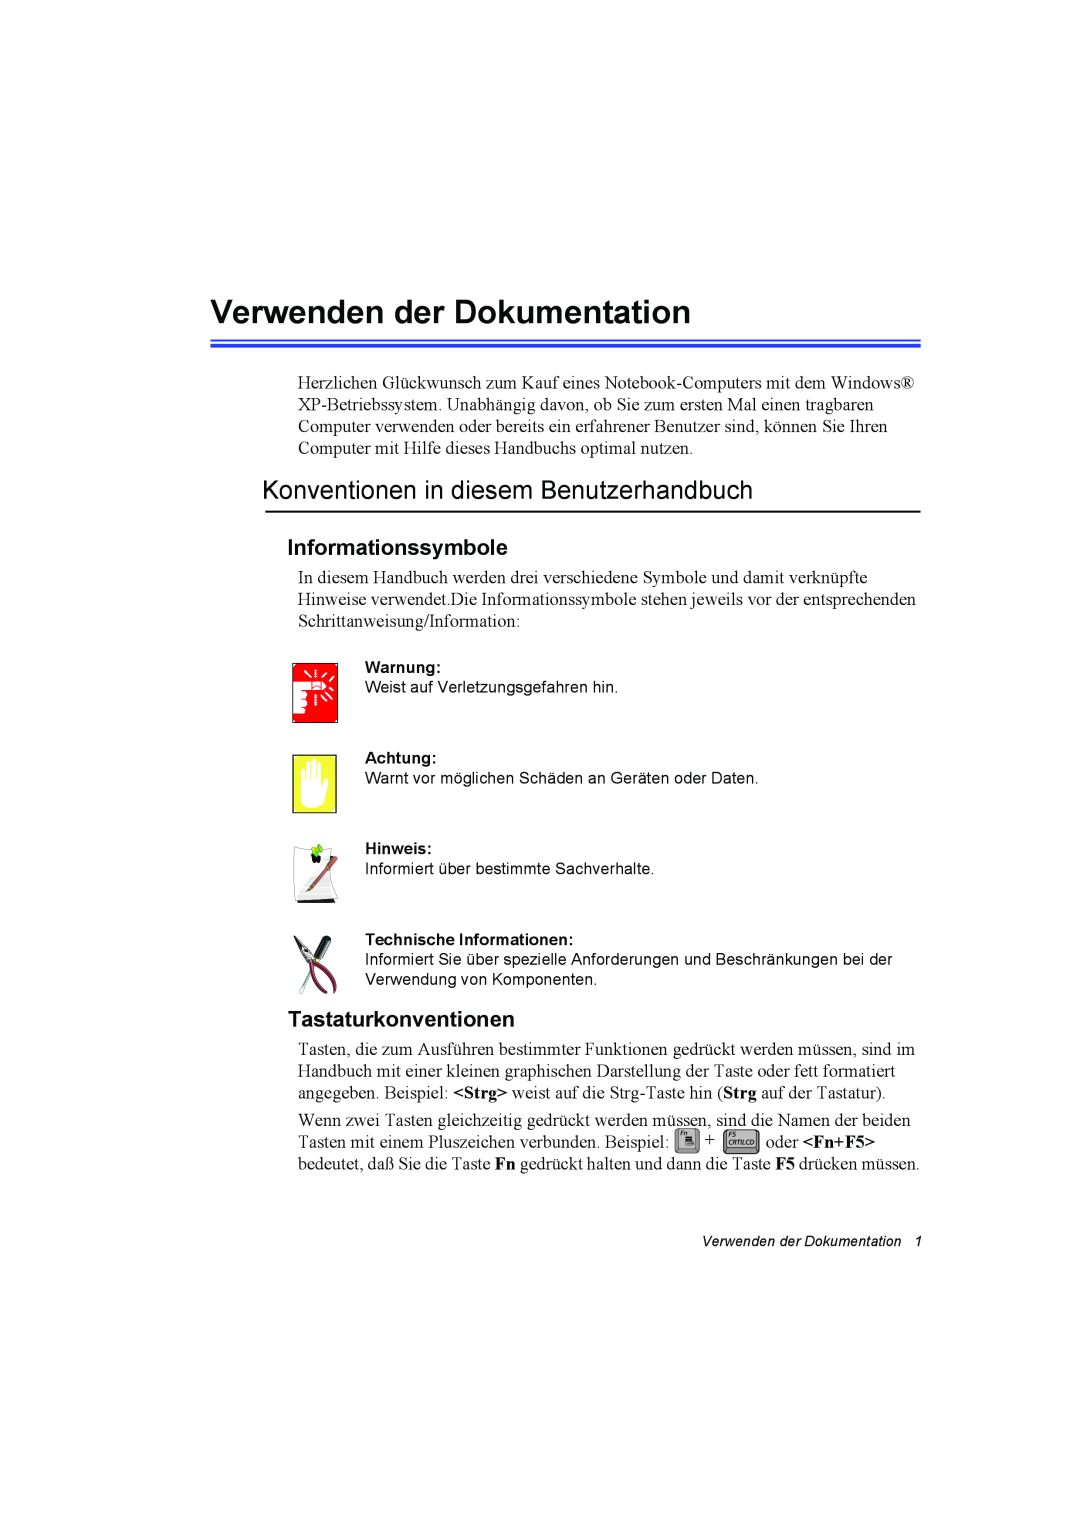 Samsung NQ10TK2T17/SEG manual Verwenden der Dokumentation, Konventionen in diesem Benutzerhandbuch, Informationssymbole 